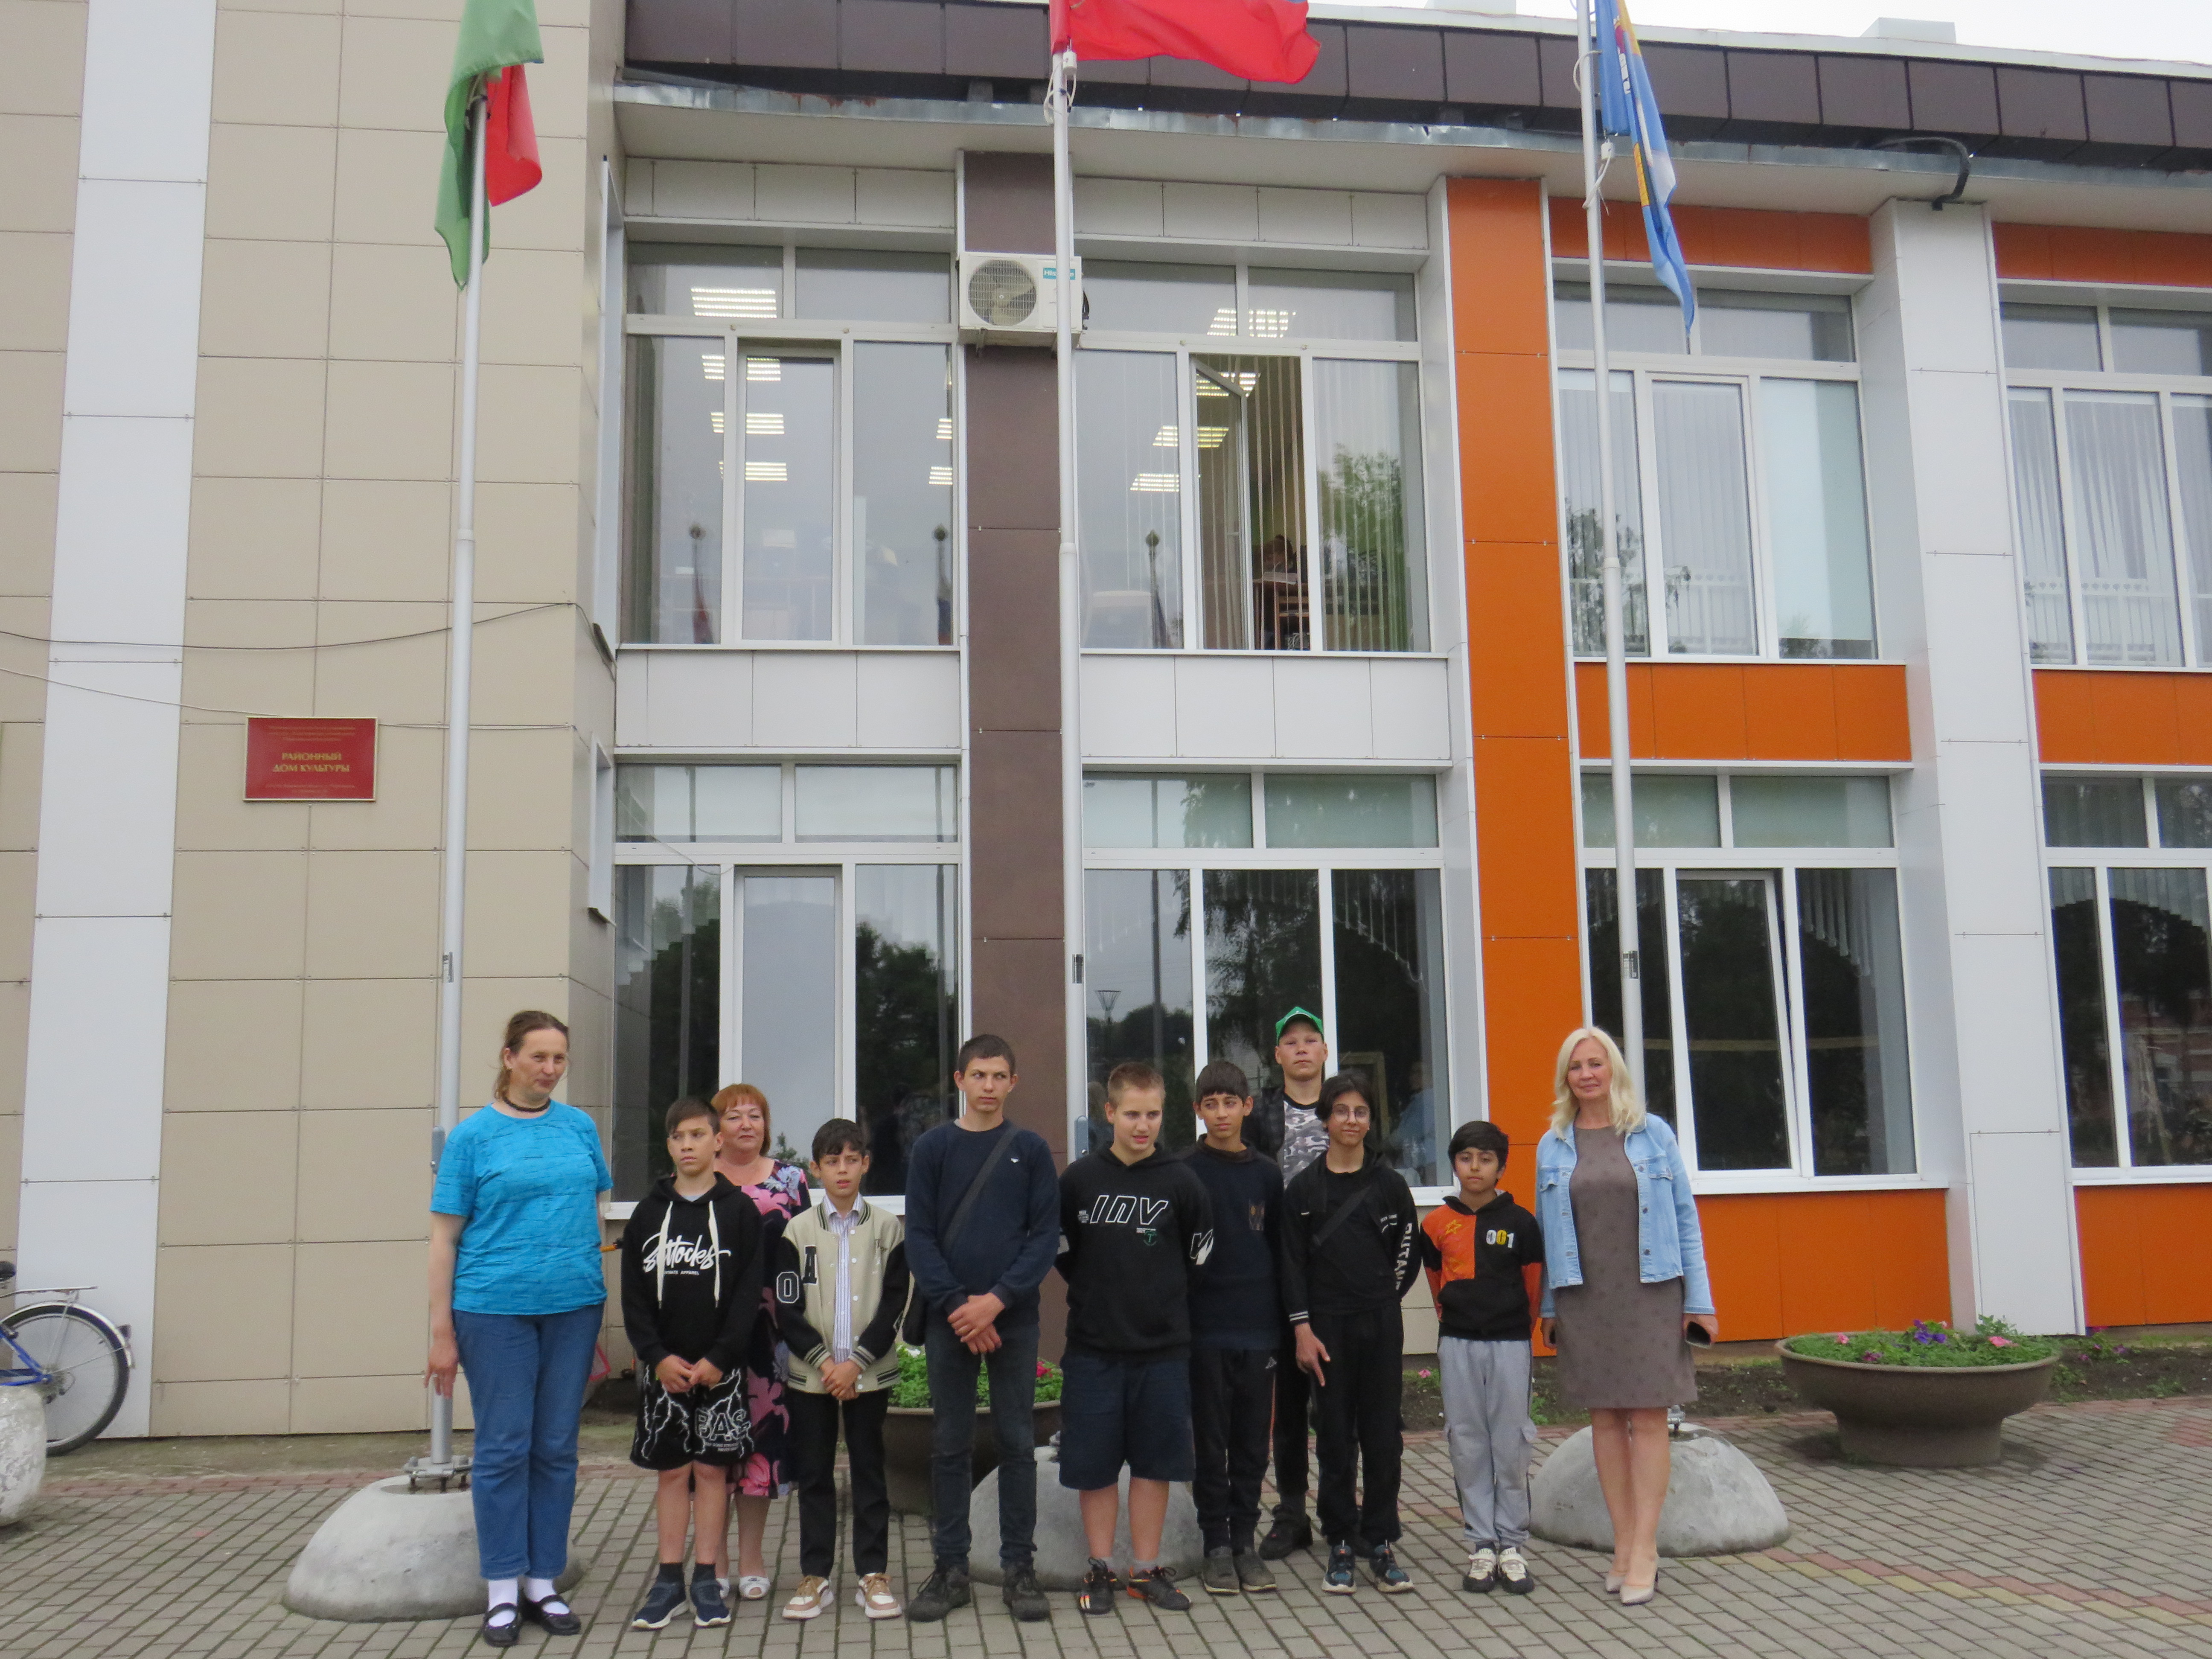 Лагерь для детей, состоящих на различных видах профилактического учета, открылся в Перемышльской школе.